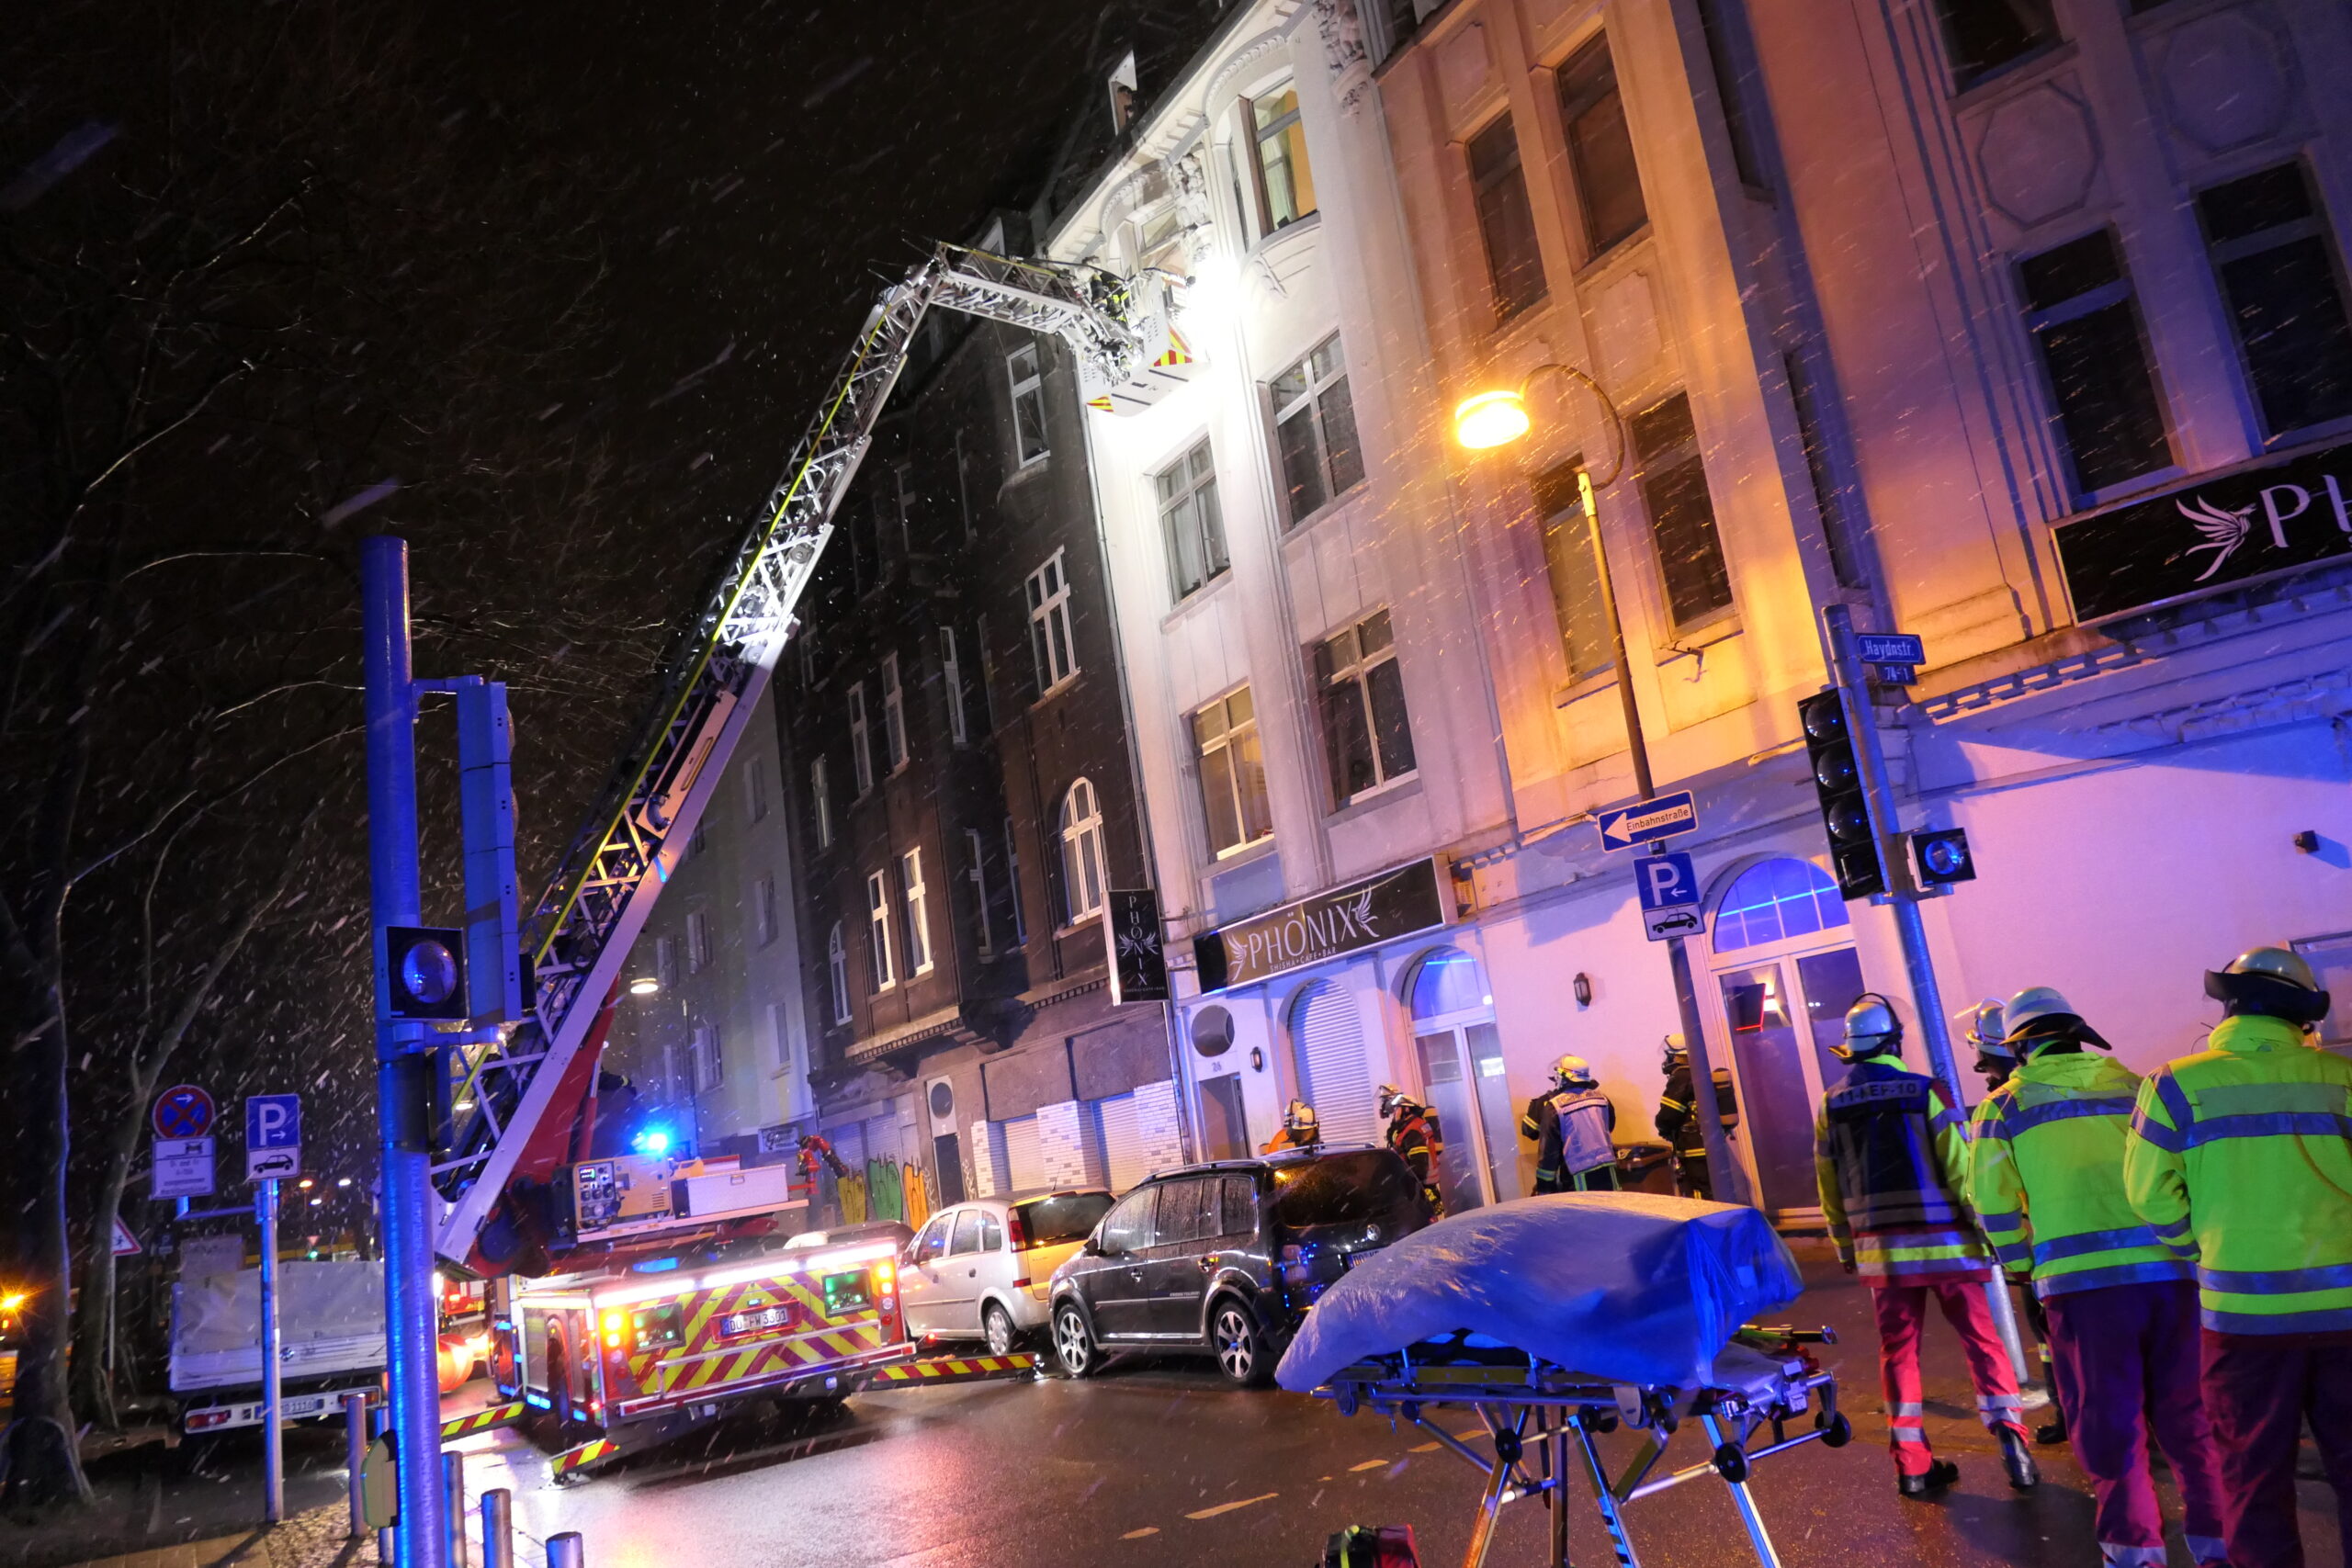 29 Betroffene nach Mülltonnenbrand in Hinterhof am Nordmarkt